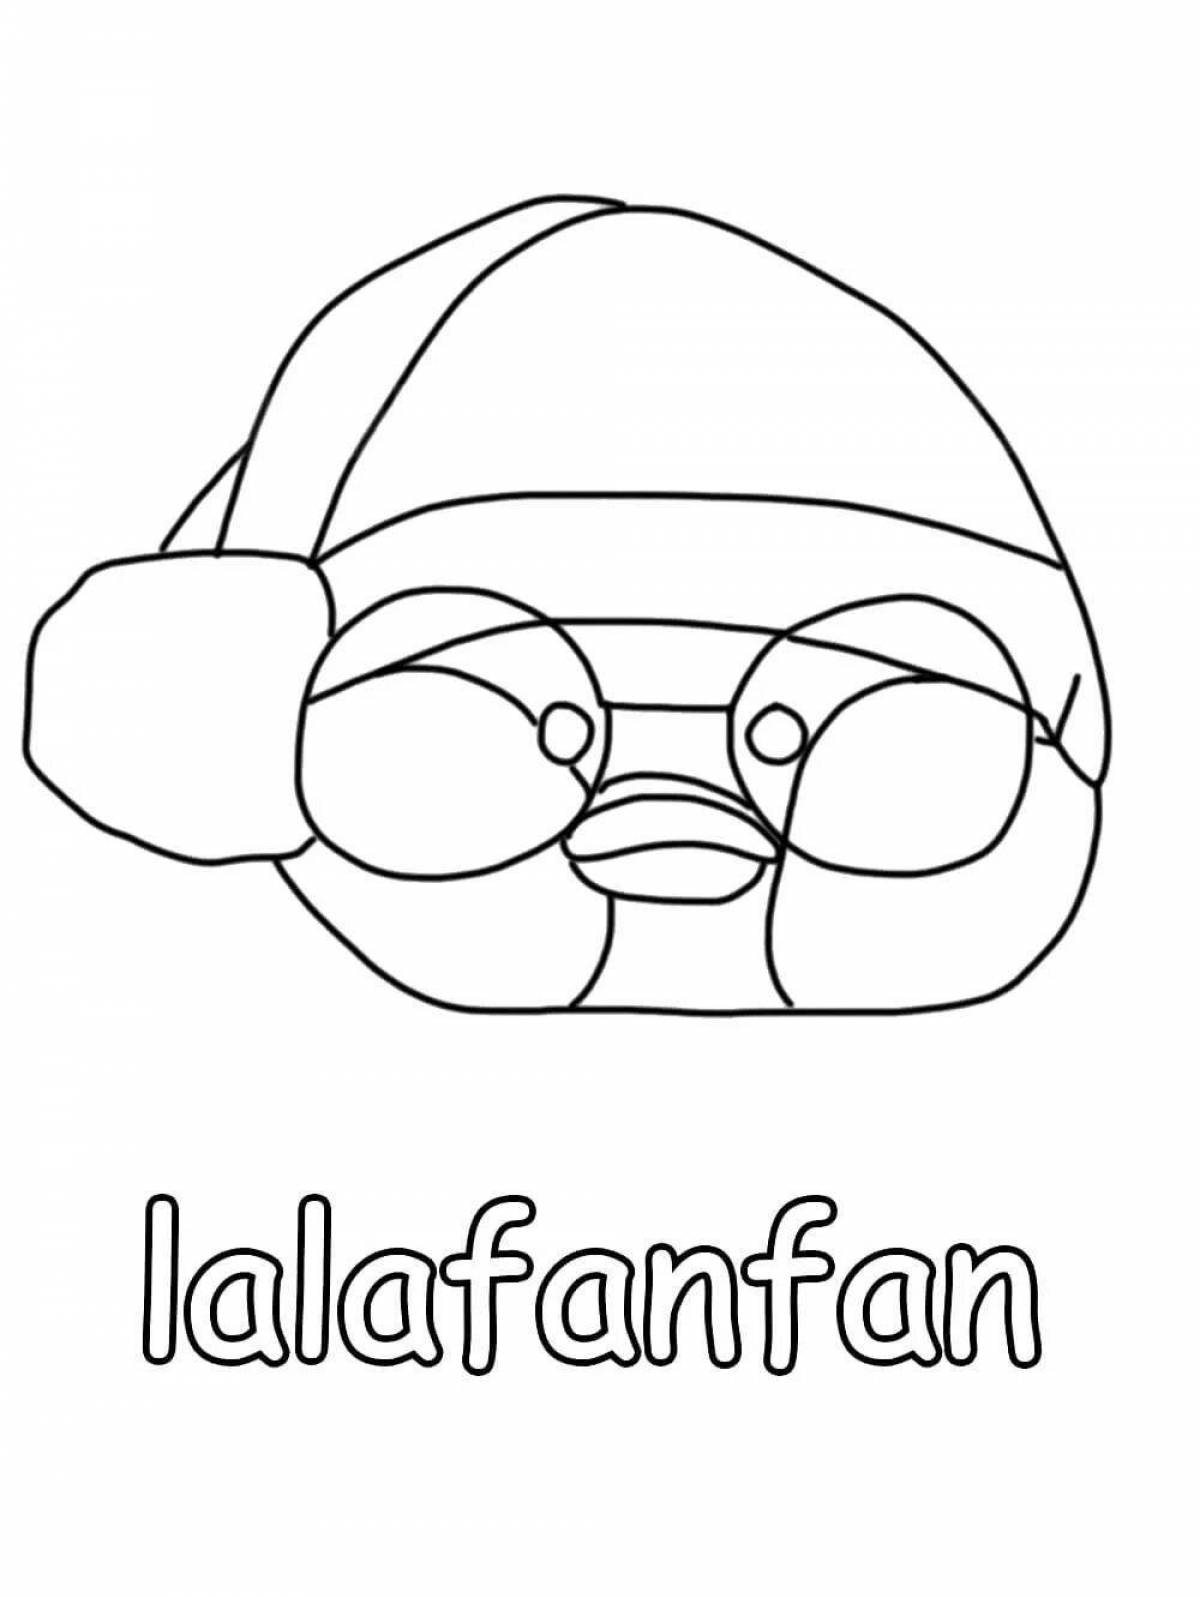 Lalafanfan duck drawing #1